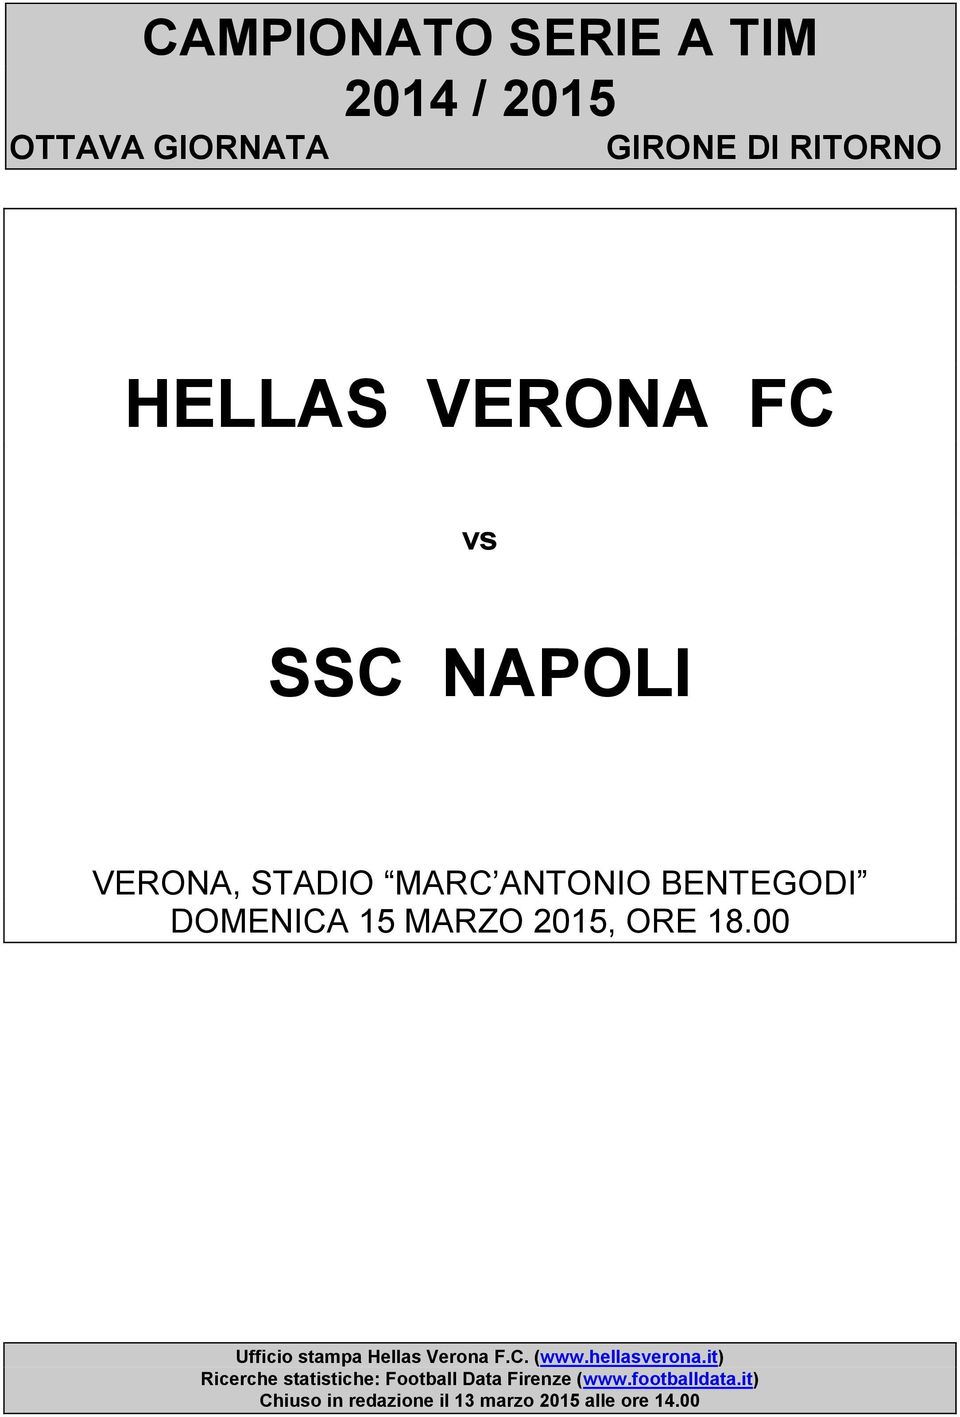 Ufficio stampa Hellas Verona F.C. (www.hellasverona.